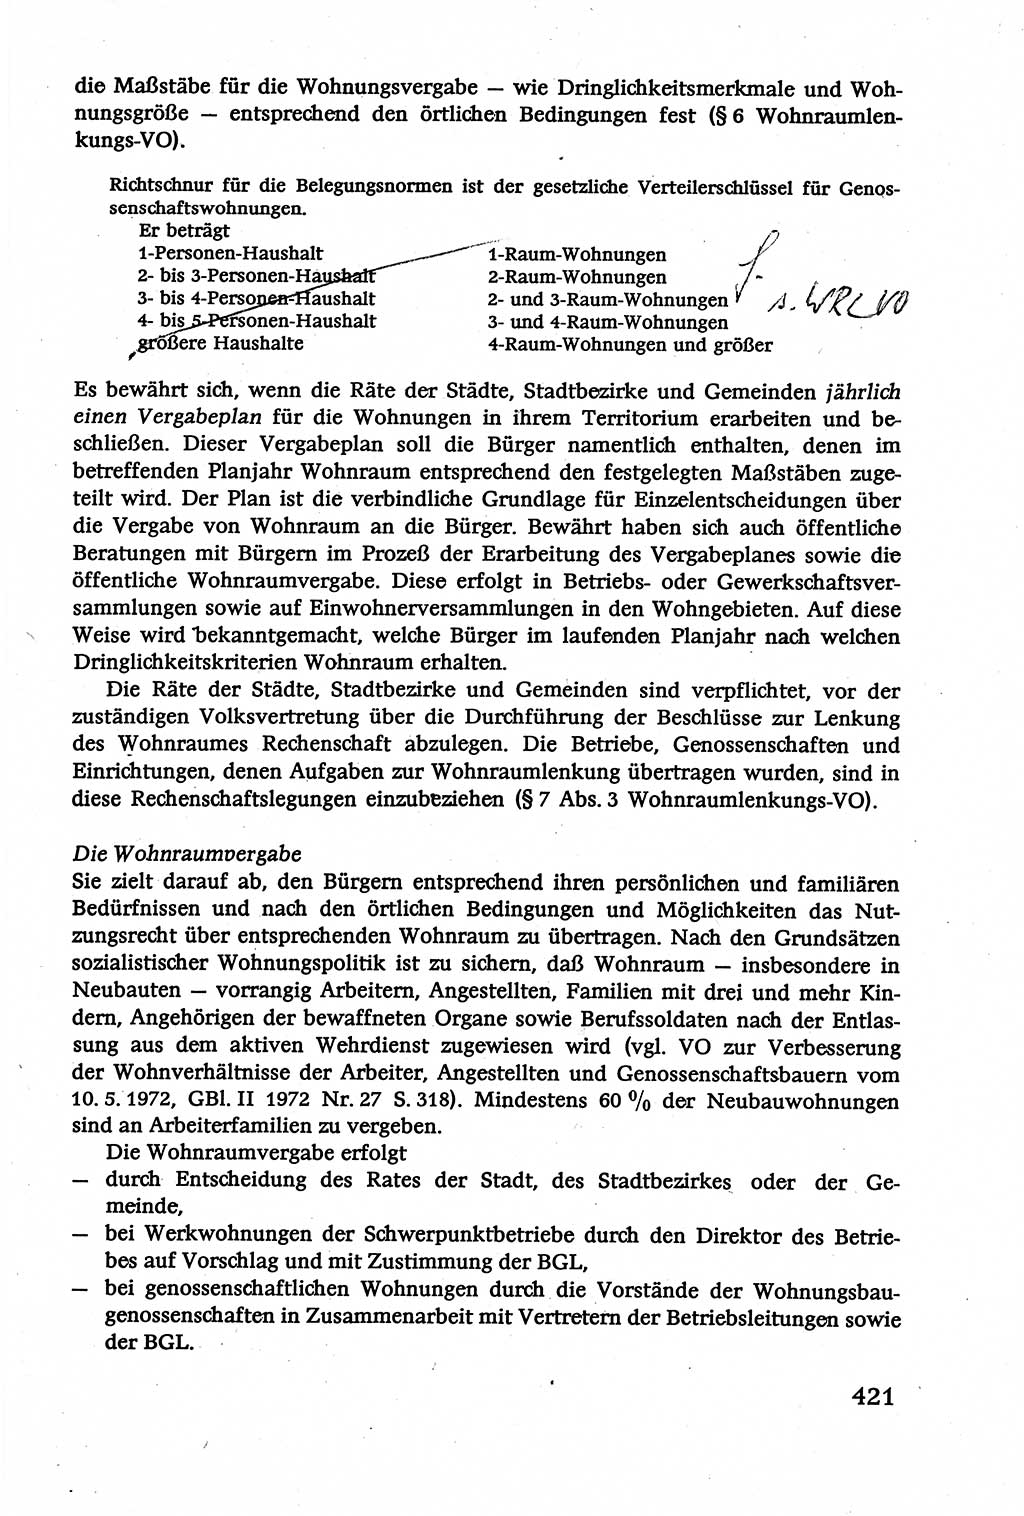 Verwaltungsrecht [Deutsche Demokratische Republik (DDR)], Lehrbuch 1979, Seite 421 (Verw.-R. DDR Lb. 1979, S. 421)